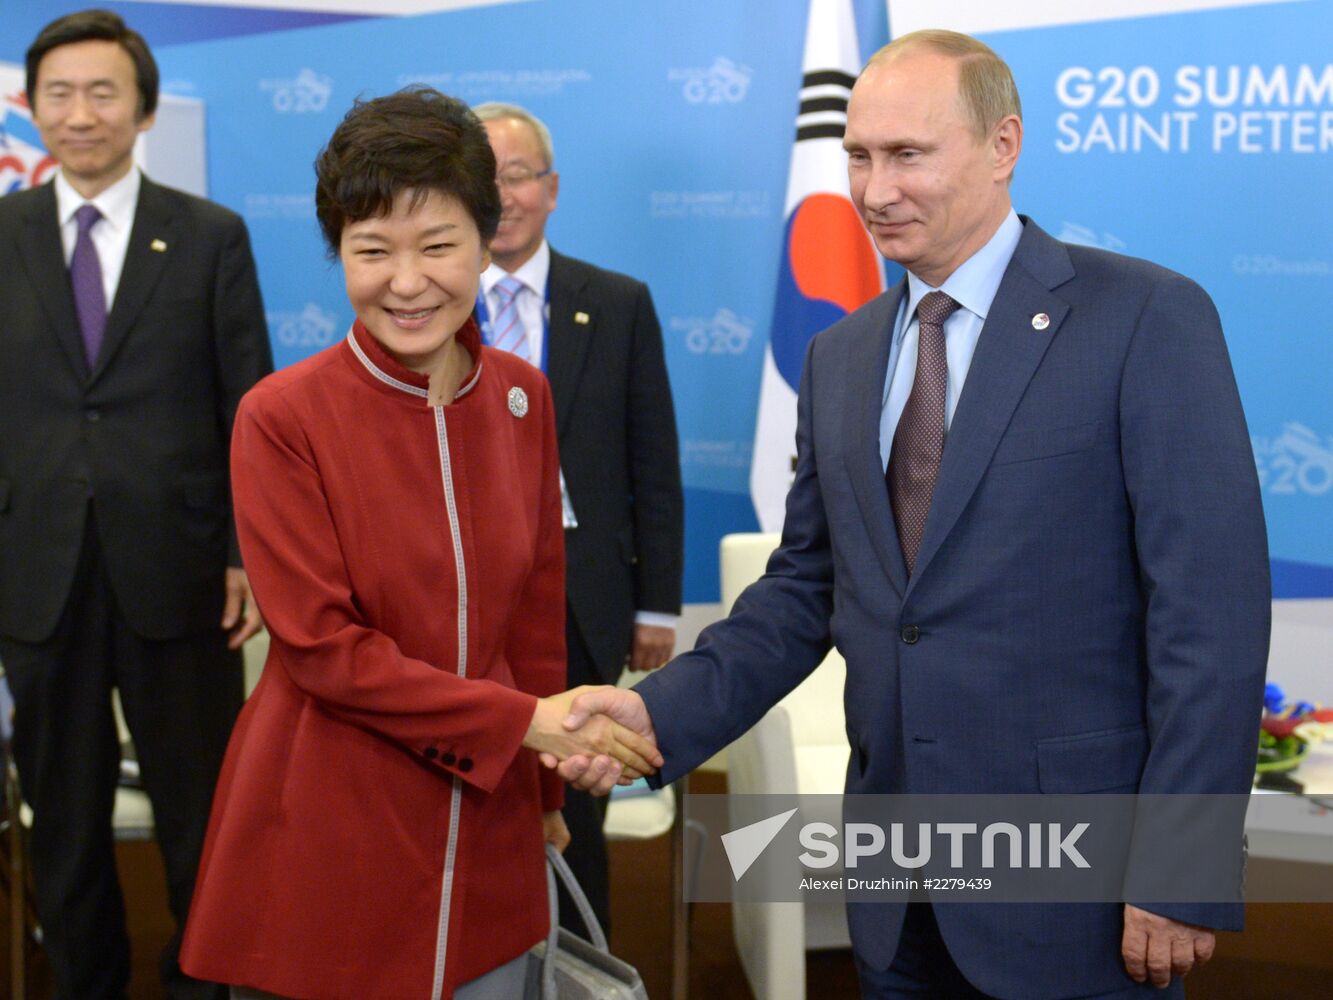 Vladimir Putin meets with Park Geun-hye